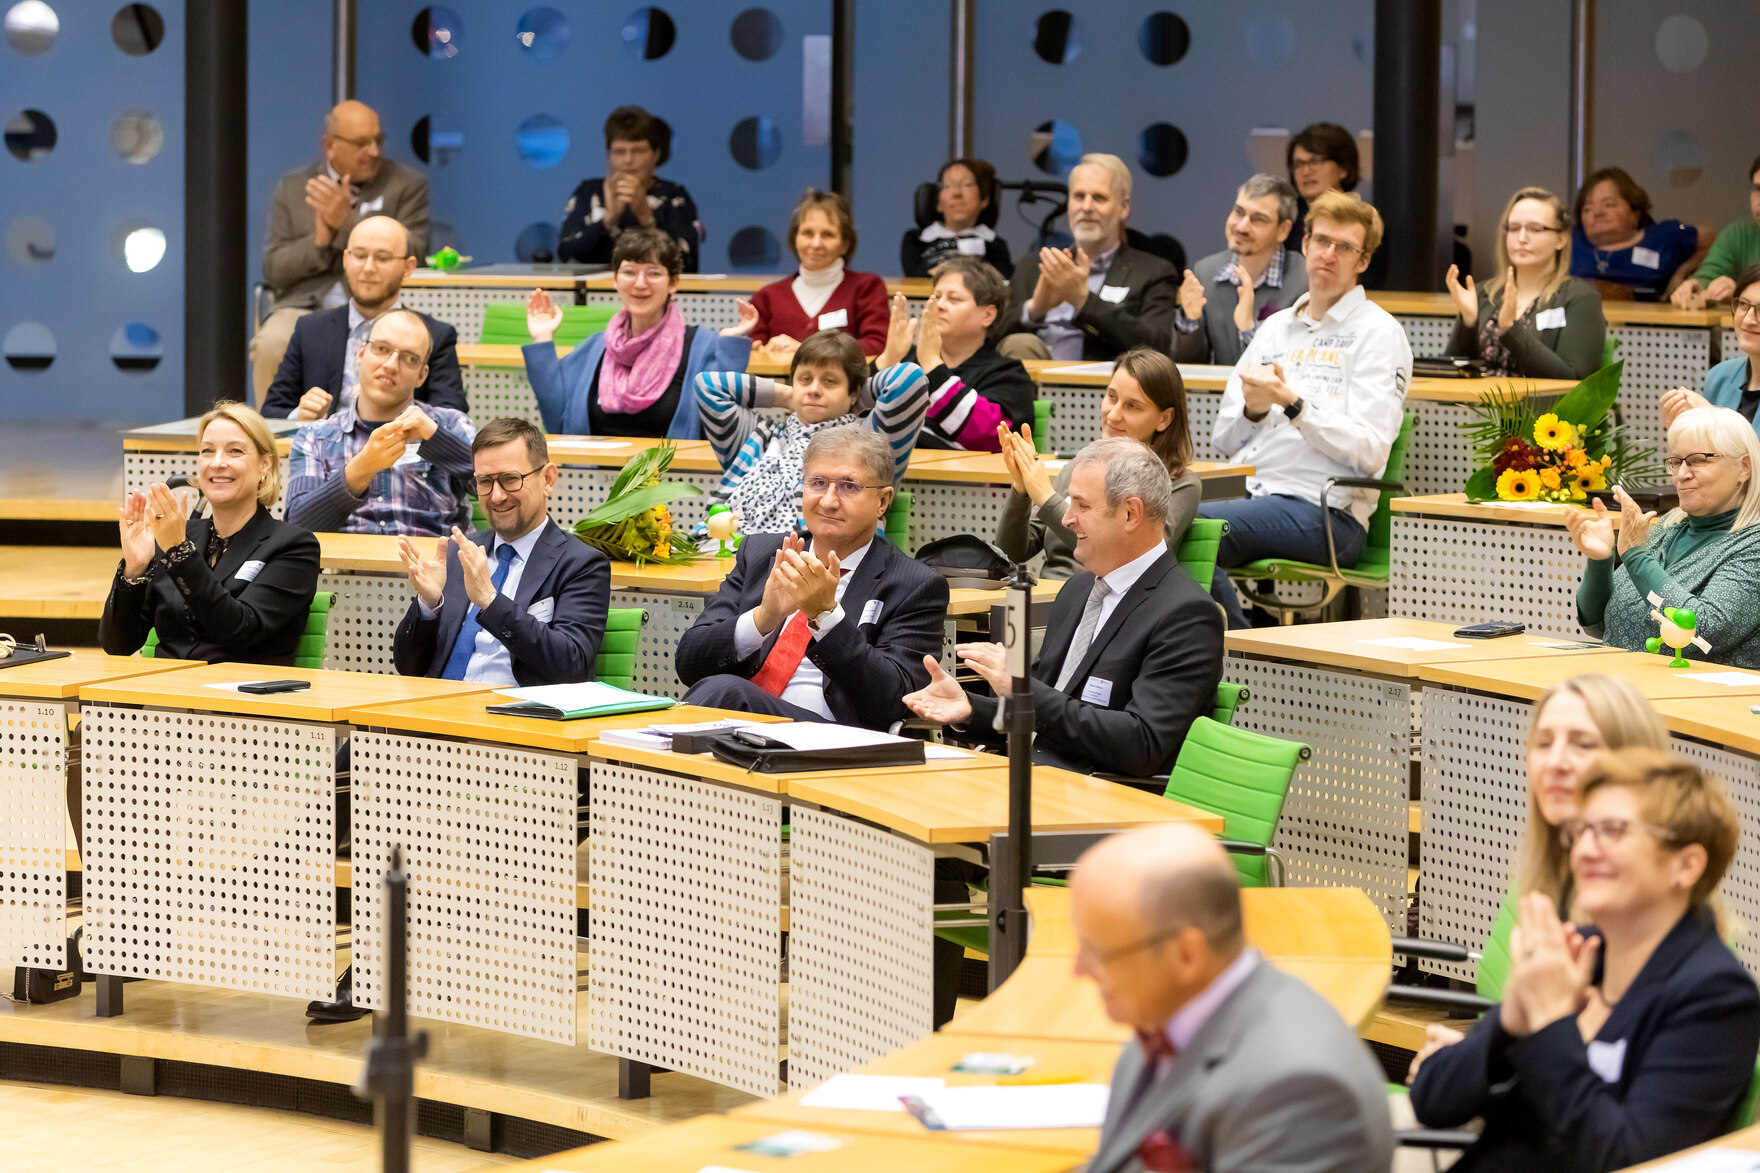 Momentaufnahme von einer Vielzahl an Teilnehmern der Preisverleihungsfeier vom 5. Sächsischen Inklusionspreis, die im Plenarsaal des Sächsischen Landtages sitzen und nach vorne auf das Präsidium schauen.